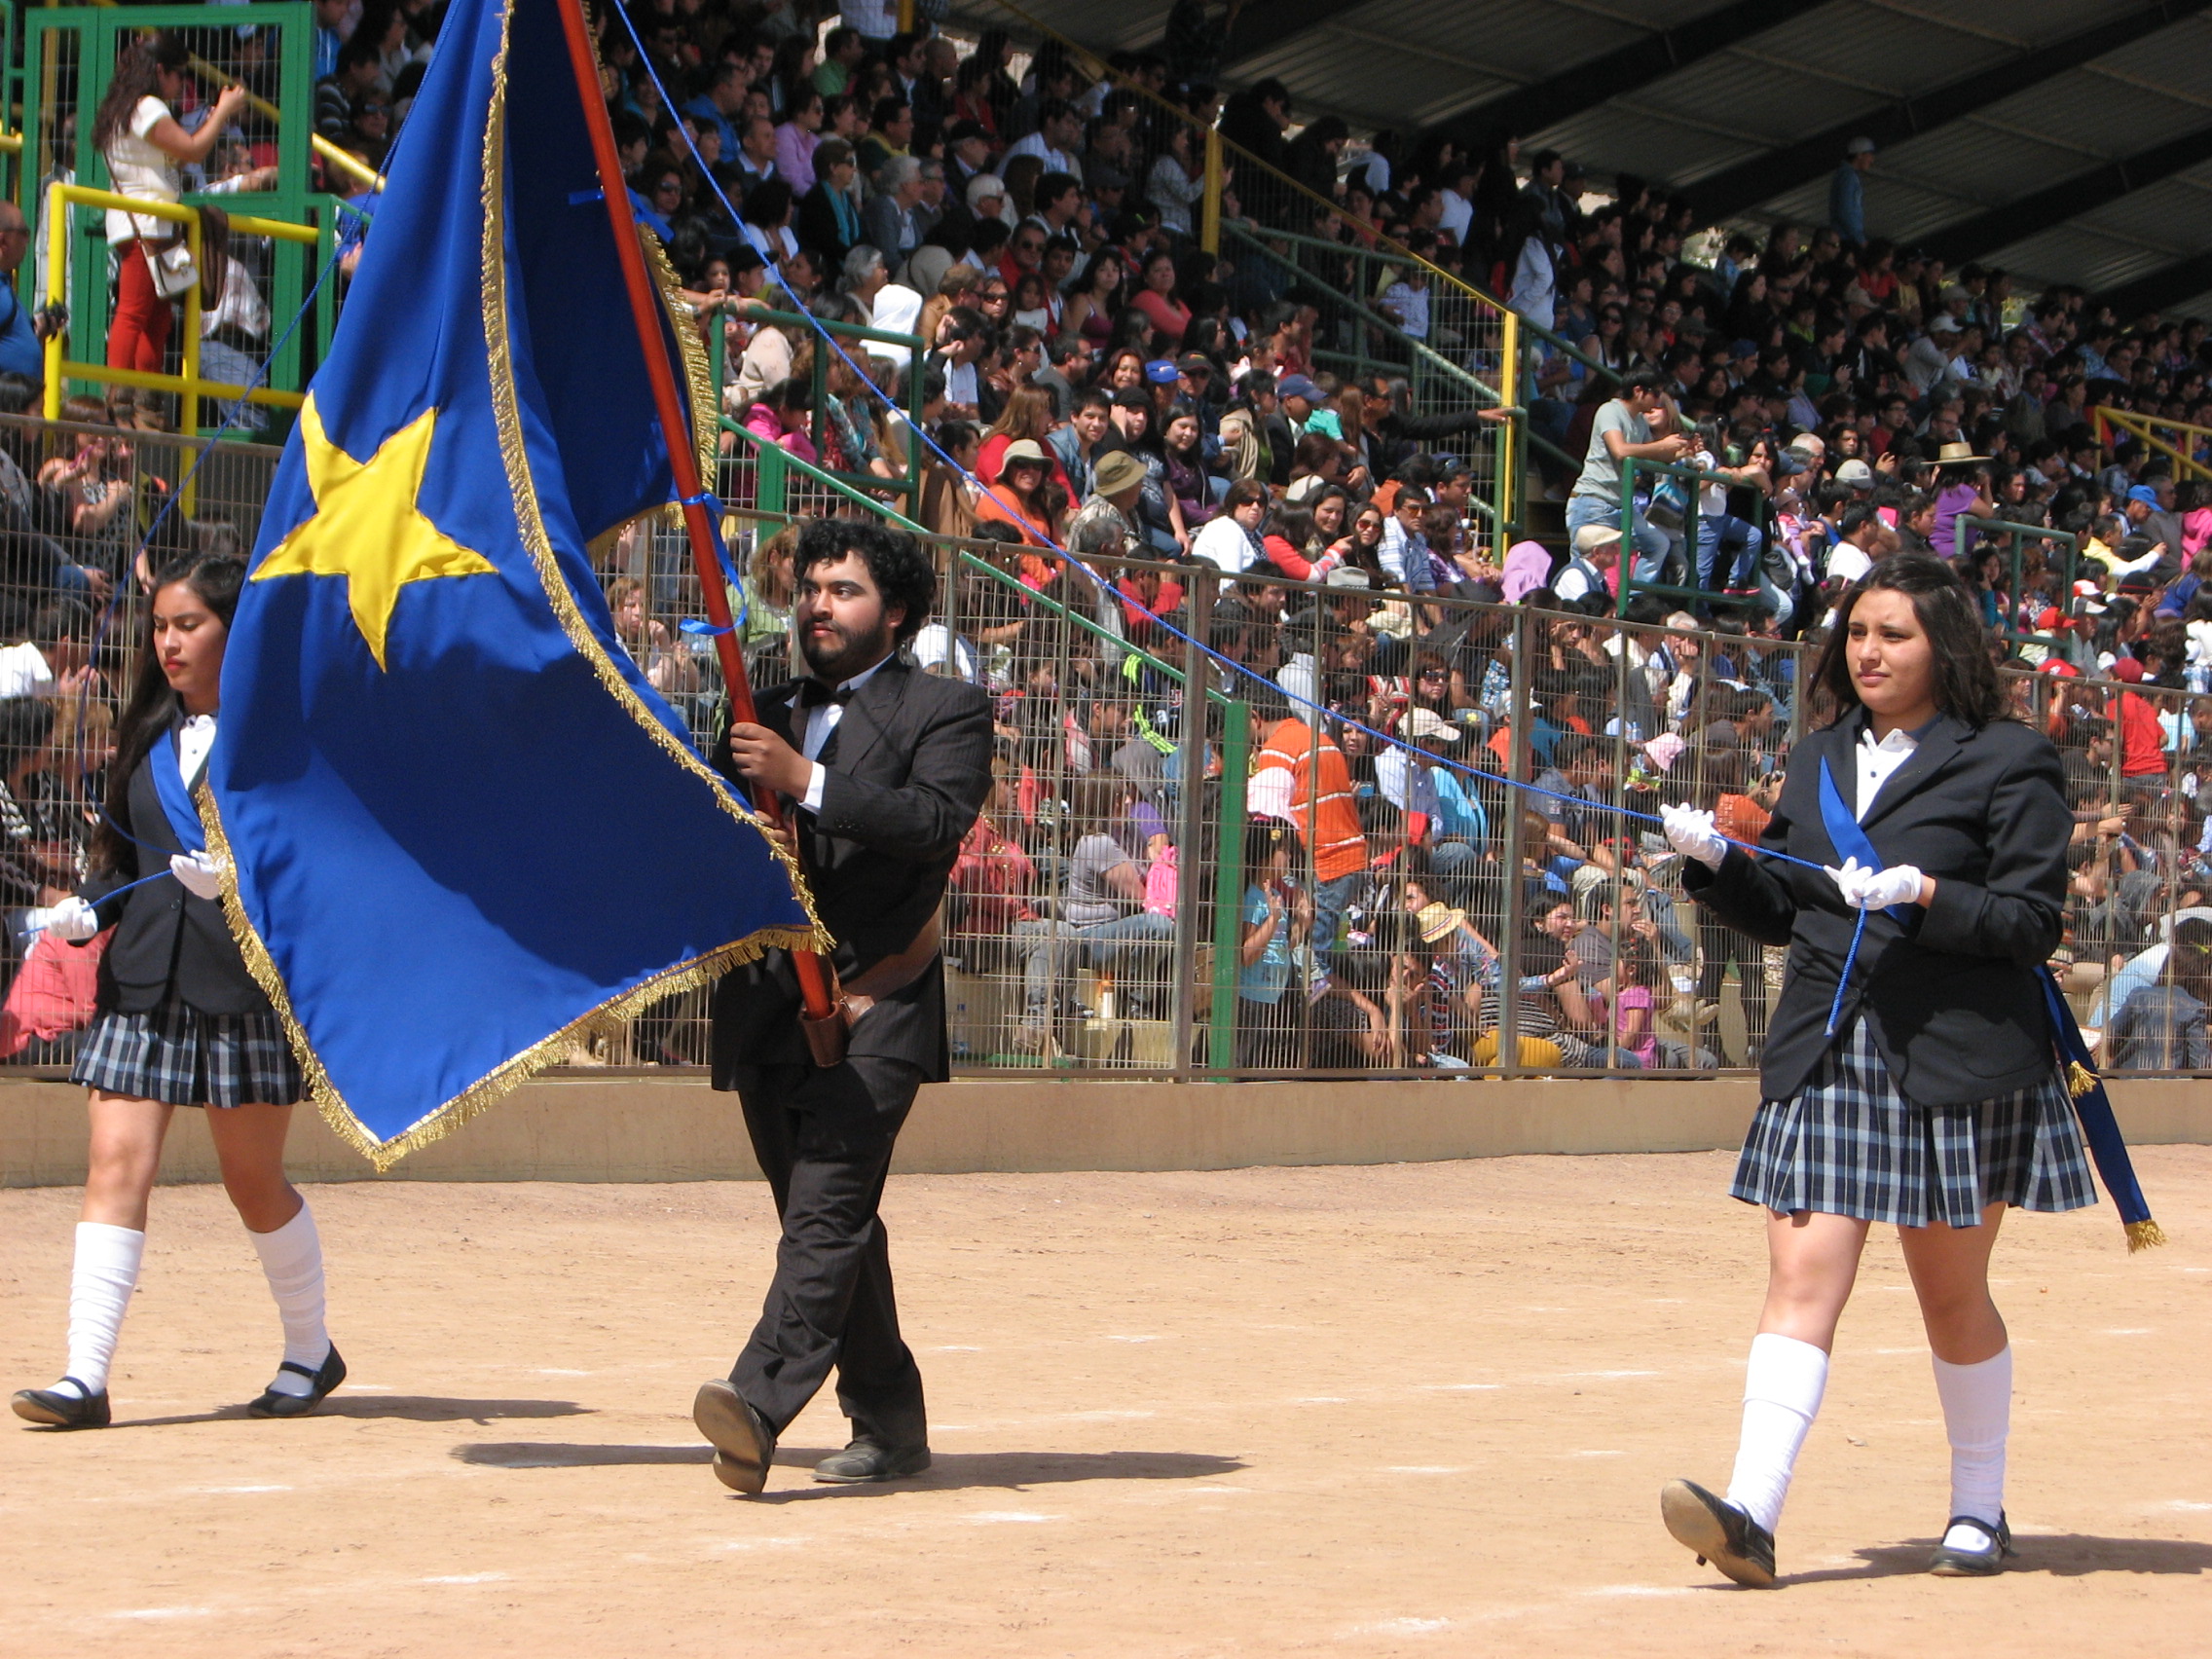 Comunidad educativa del PTM cumplió con excelente desfile de Fiestas Patrias